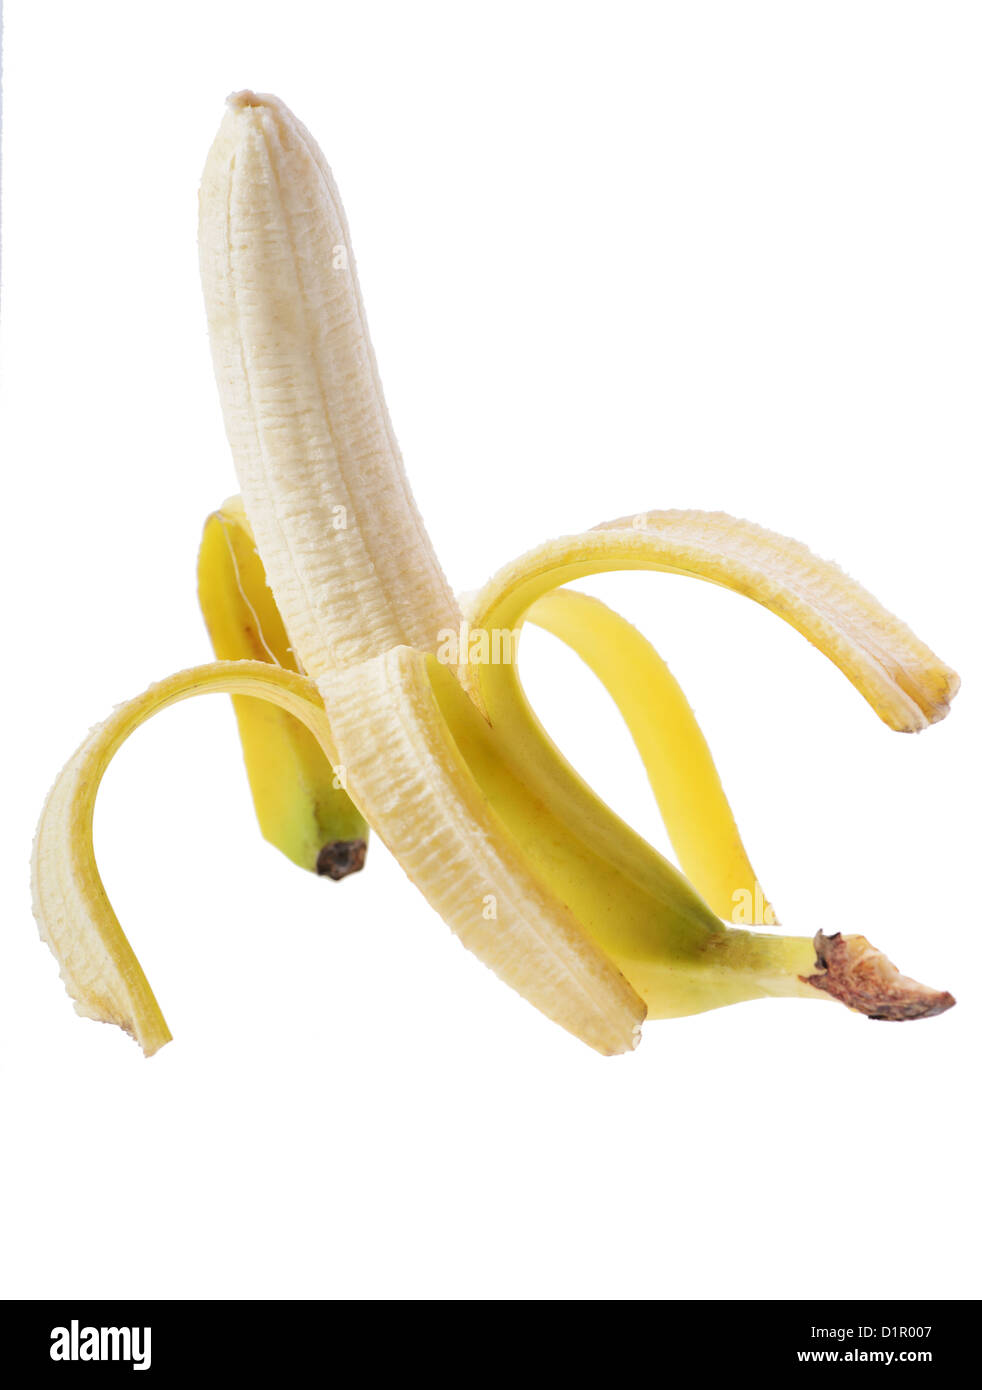 Ouvrir banana isolé sur fond blanc Banque D'Images